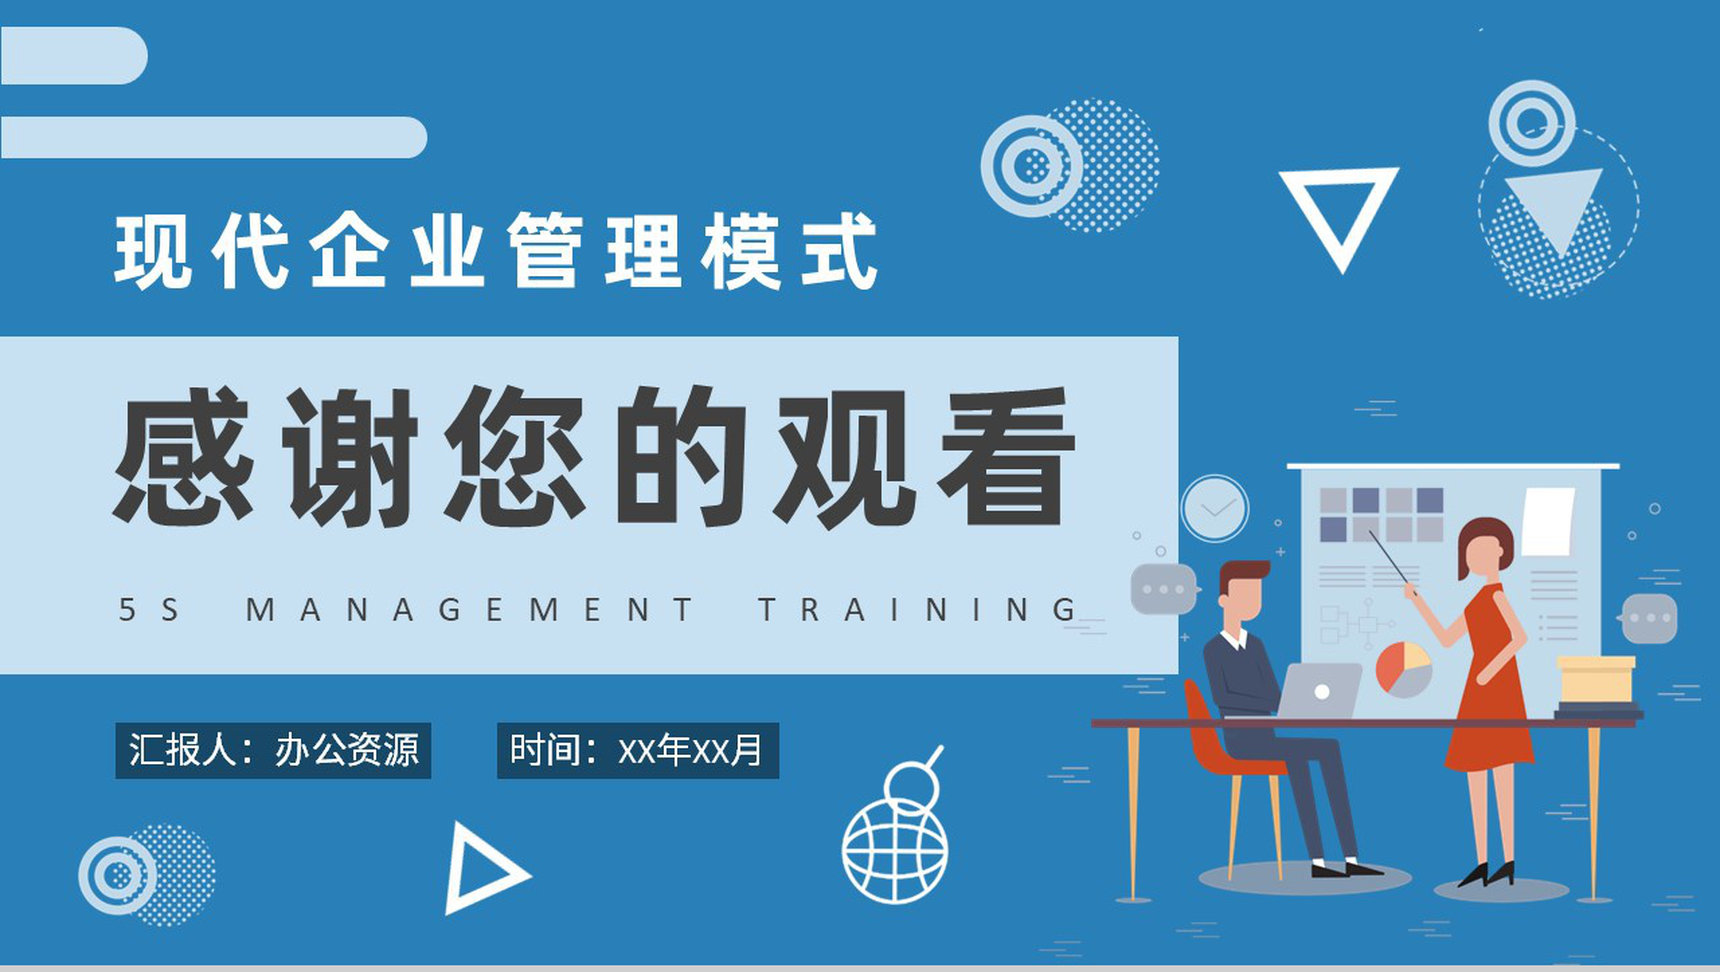 5S管理内容和标准培训现代企业管理模式知识学习PPT模板-9